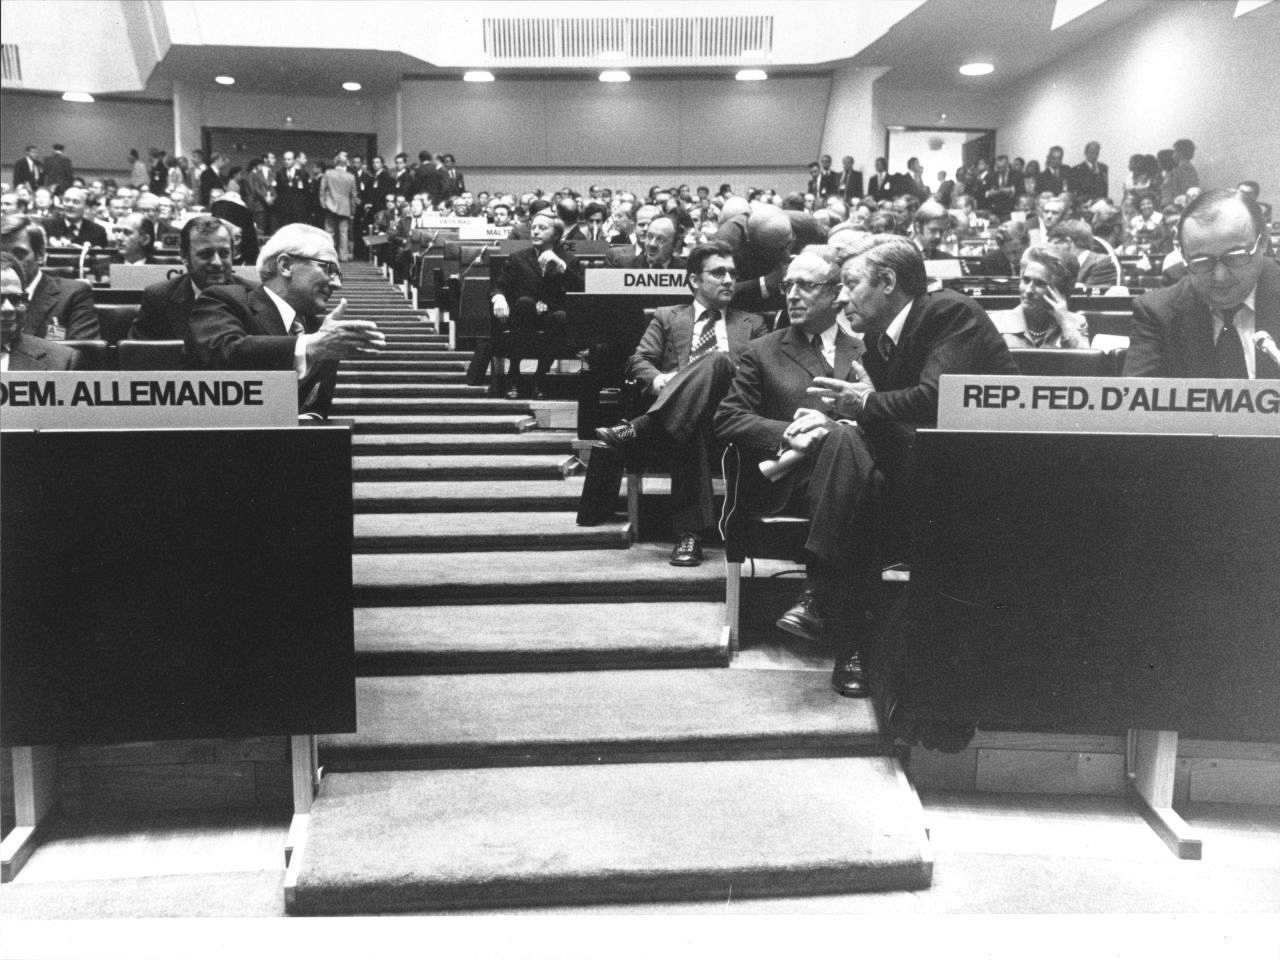 Schwarzweiß-Foto des KSZE-Konferenzsaals. Mittig Treppe hinauf zum Ausgang. Beidseitig davon Rang-Bestuhlung. In der ersten Reihe durch die Treppe voneinander getrennt, sitzen rechts Erich Honecker und links Helmut Schmidt, miteinander im Gespräch.